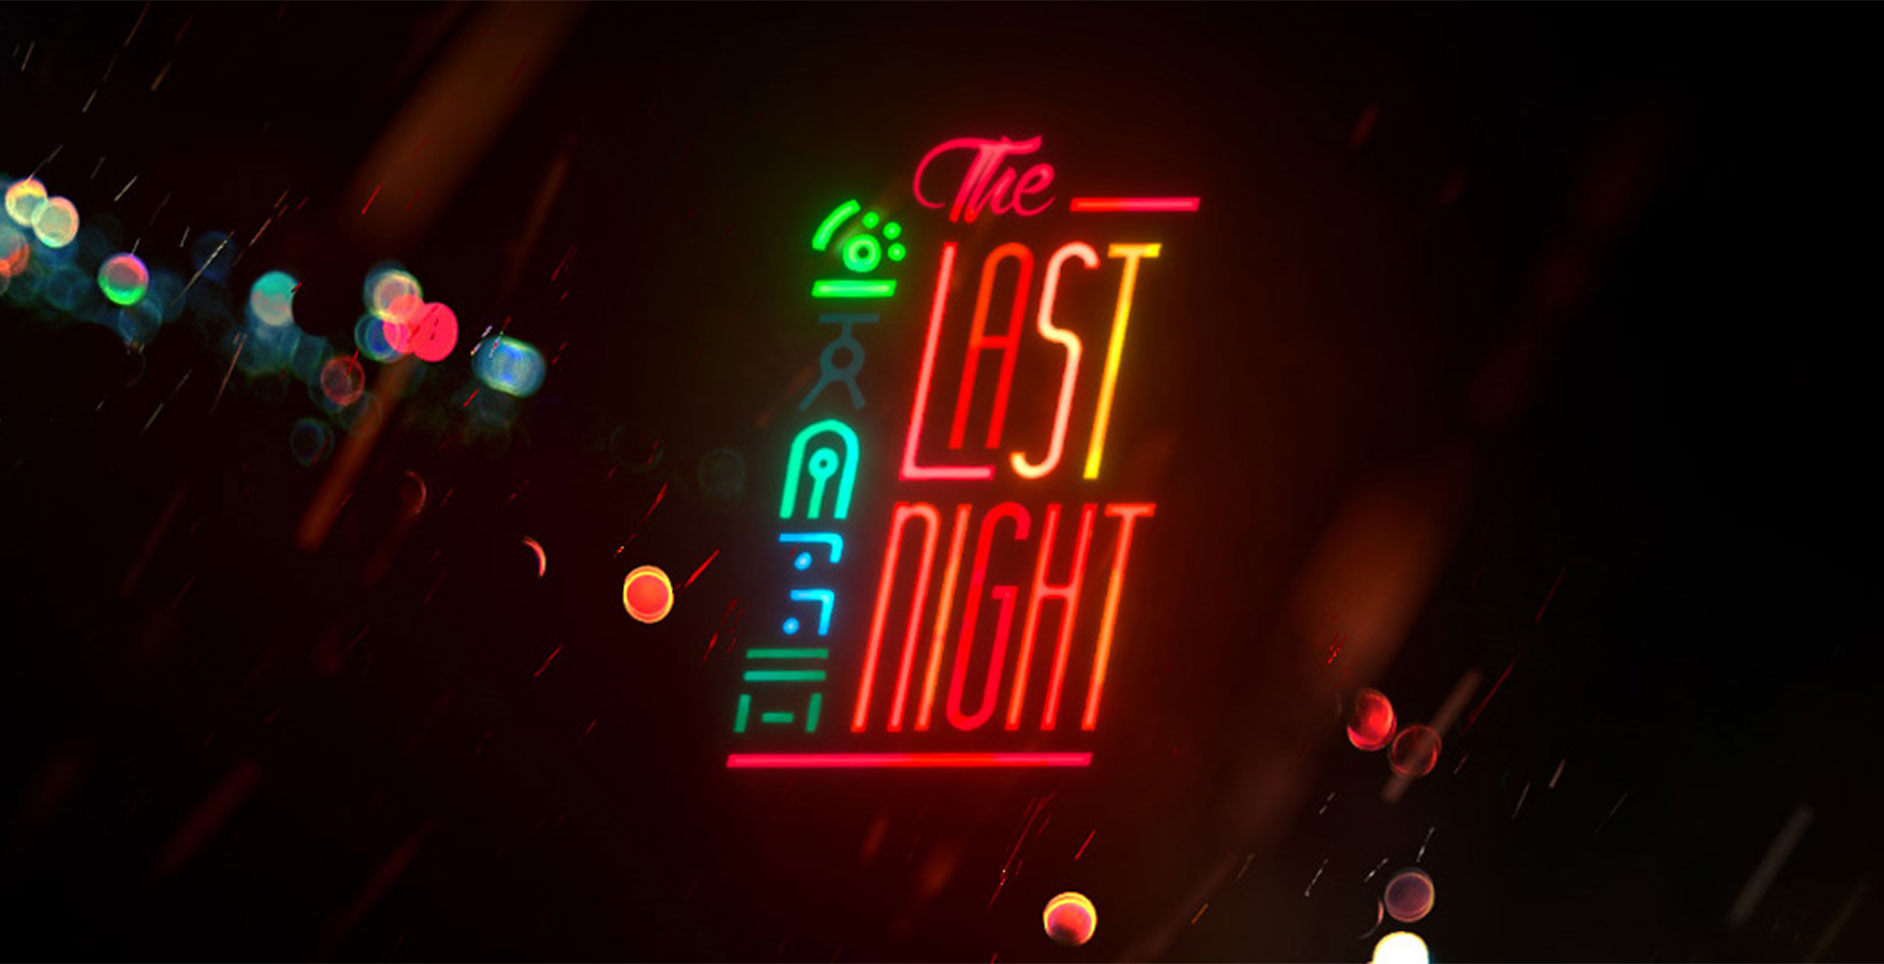 Since last night. The last Night (2021). The last Night игра. The last Night игра обложка. Трейлер the last Night.